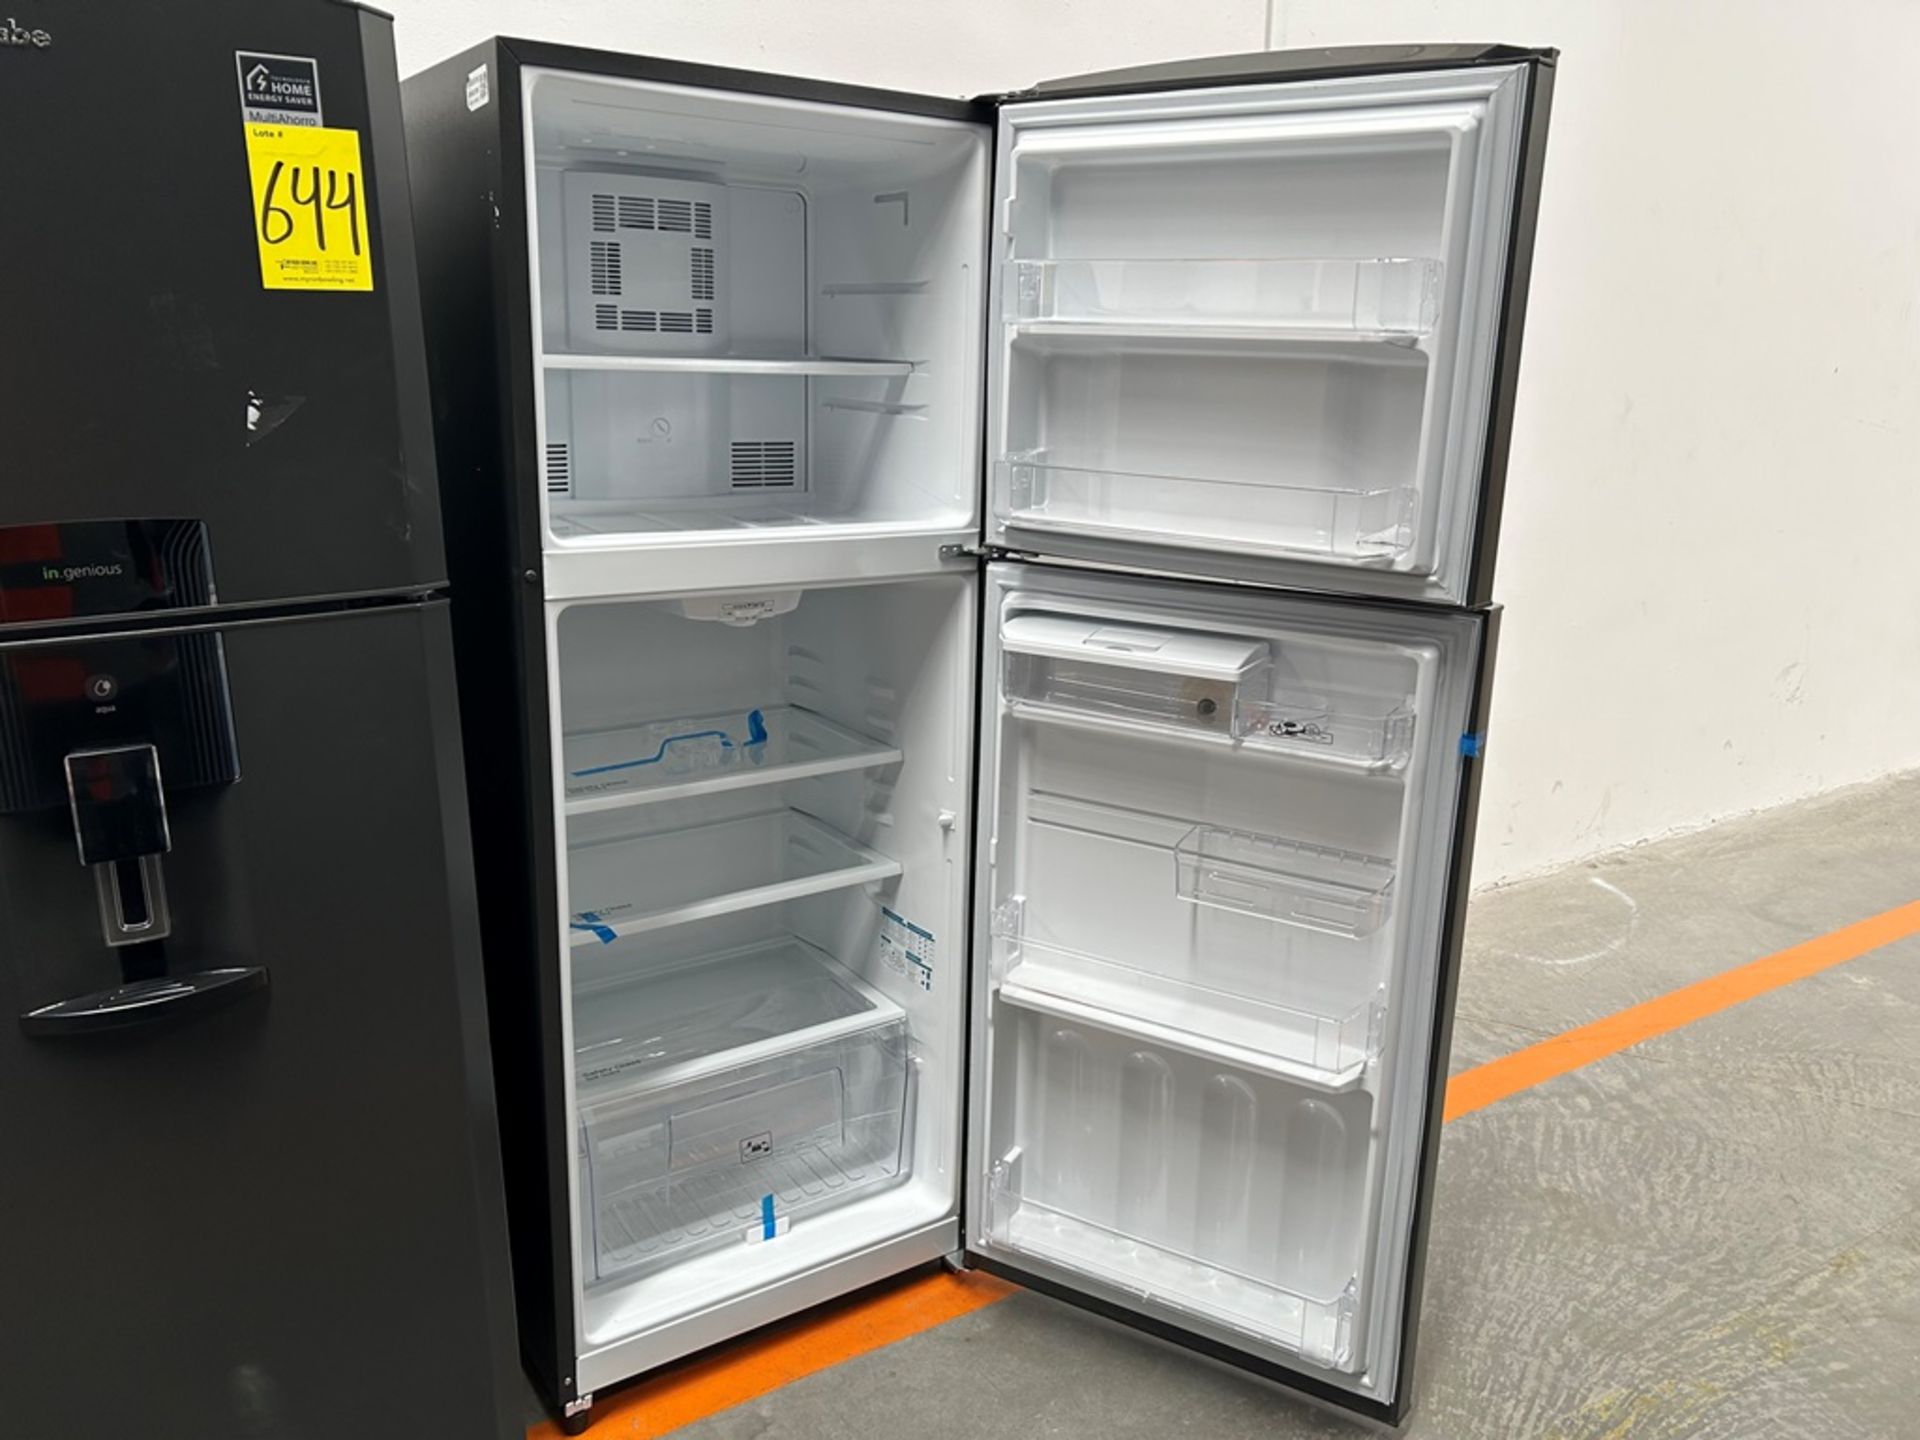 Lote de 2 refrigeradores contiene: 1 refrigerador con dispensador de agua Marca MABE, Modelo RME360 - Image 11 of 18